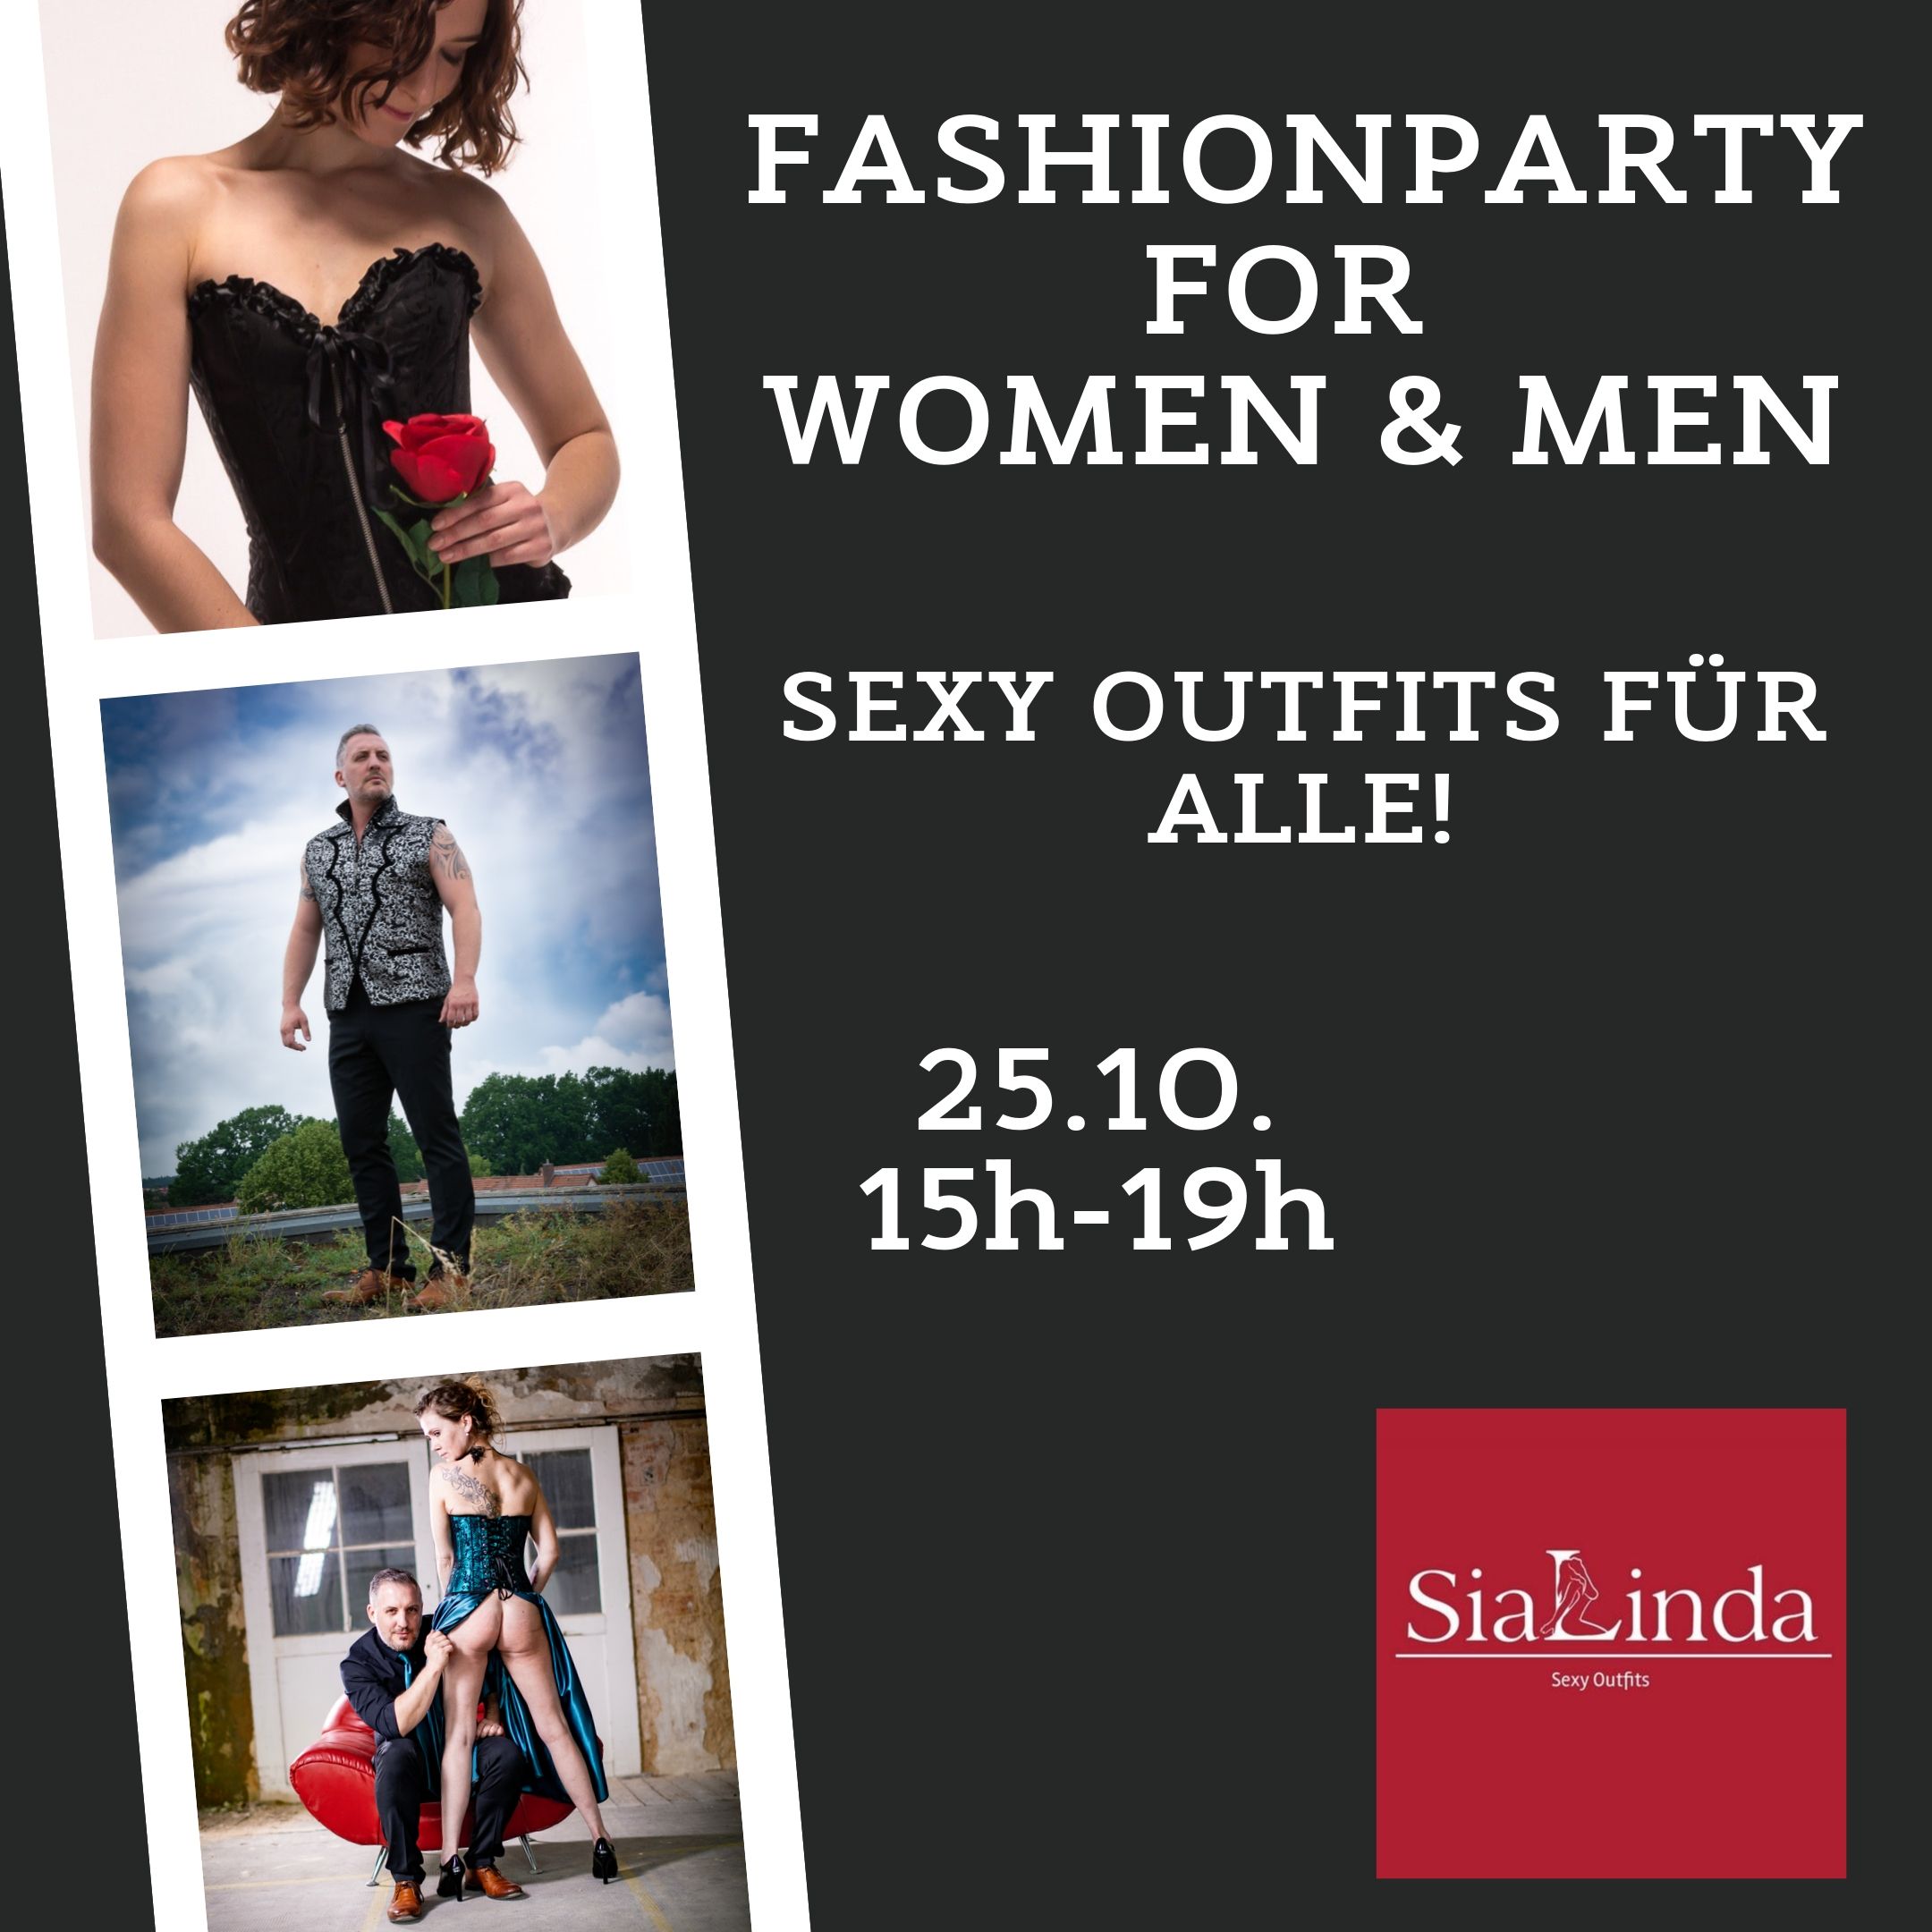 SiaLinda Fashionparty 25.10.19